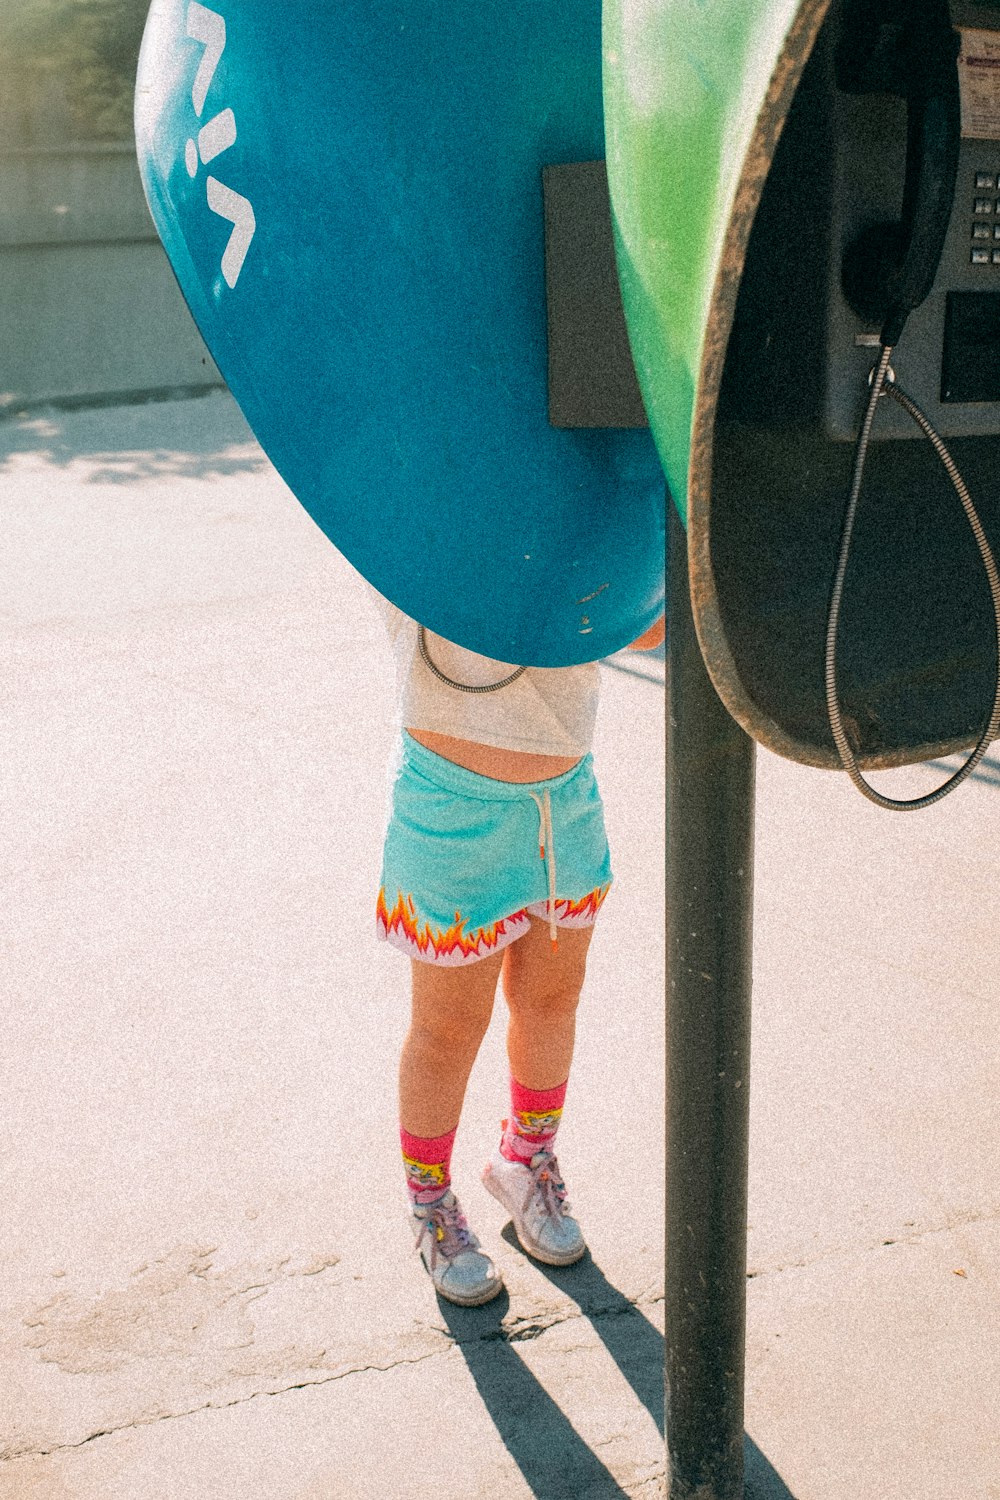 パーキングメーターの横に立つ小さな女の子